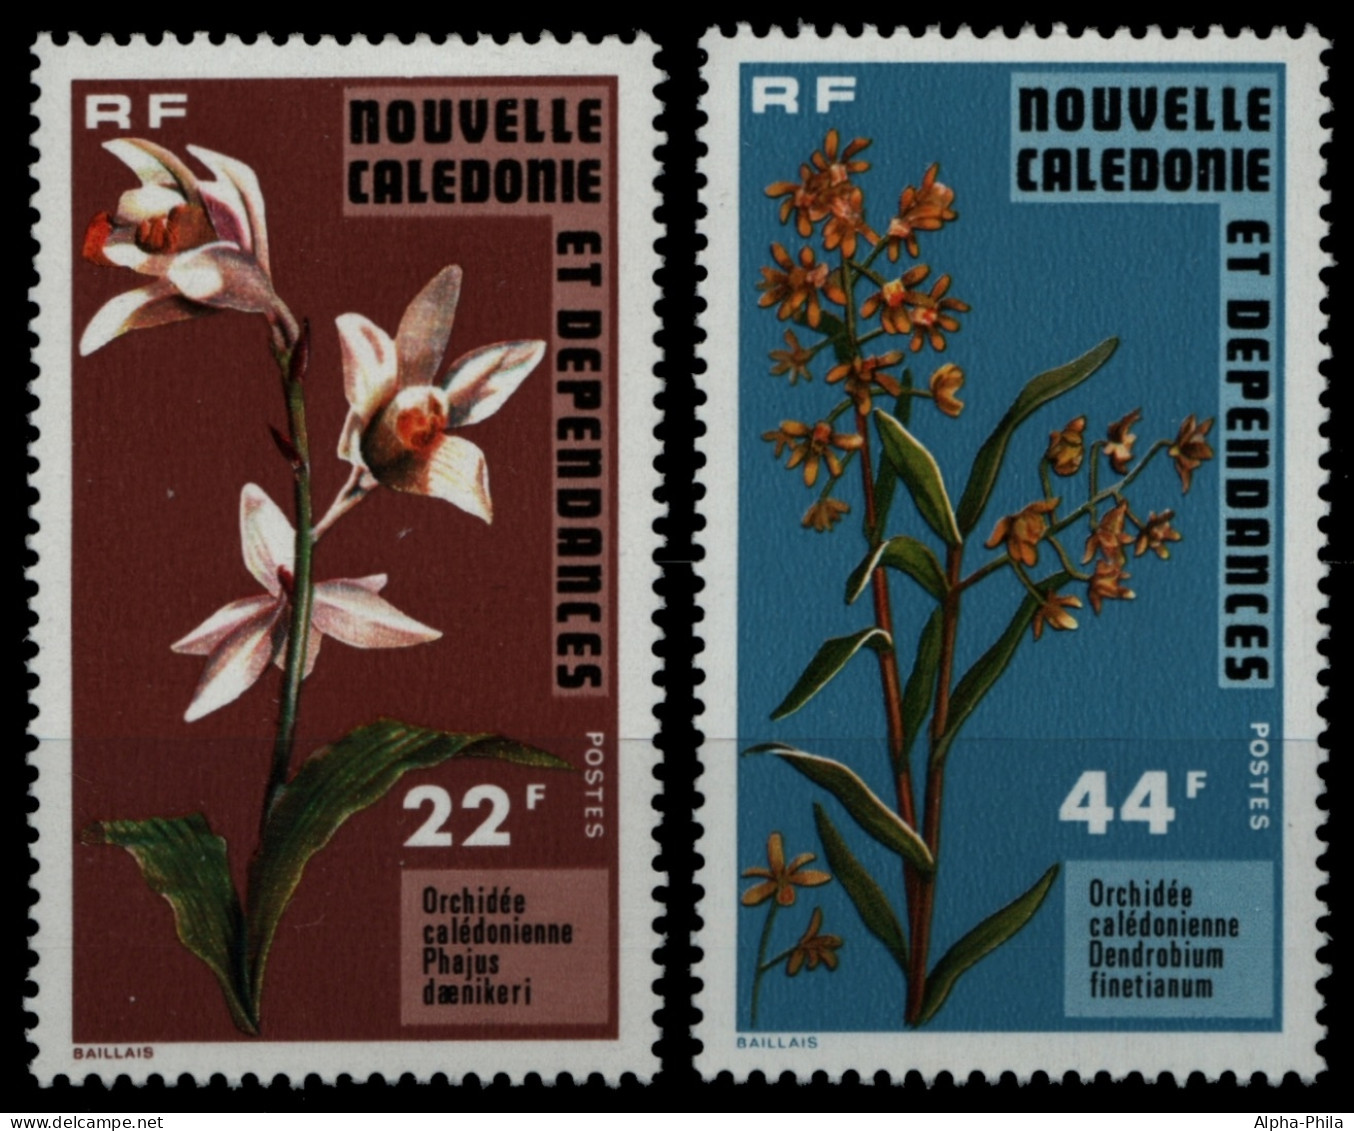 Neukaledonien 1977 - Mi-Nr. 593-594 ** - MNH - Orchideen / Orchids - Ongebruikt